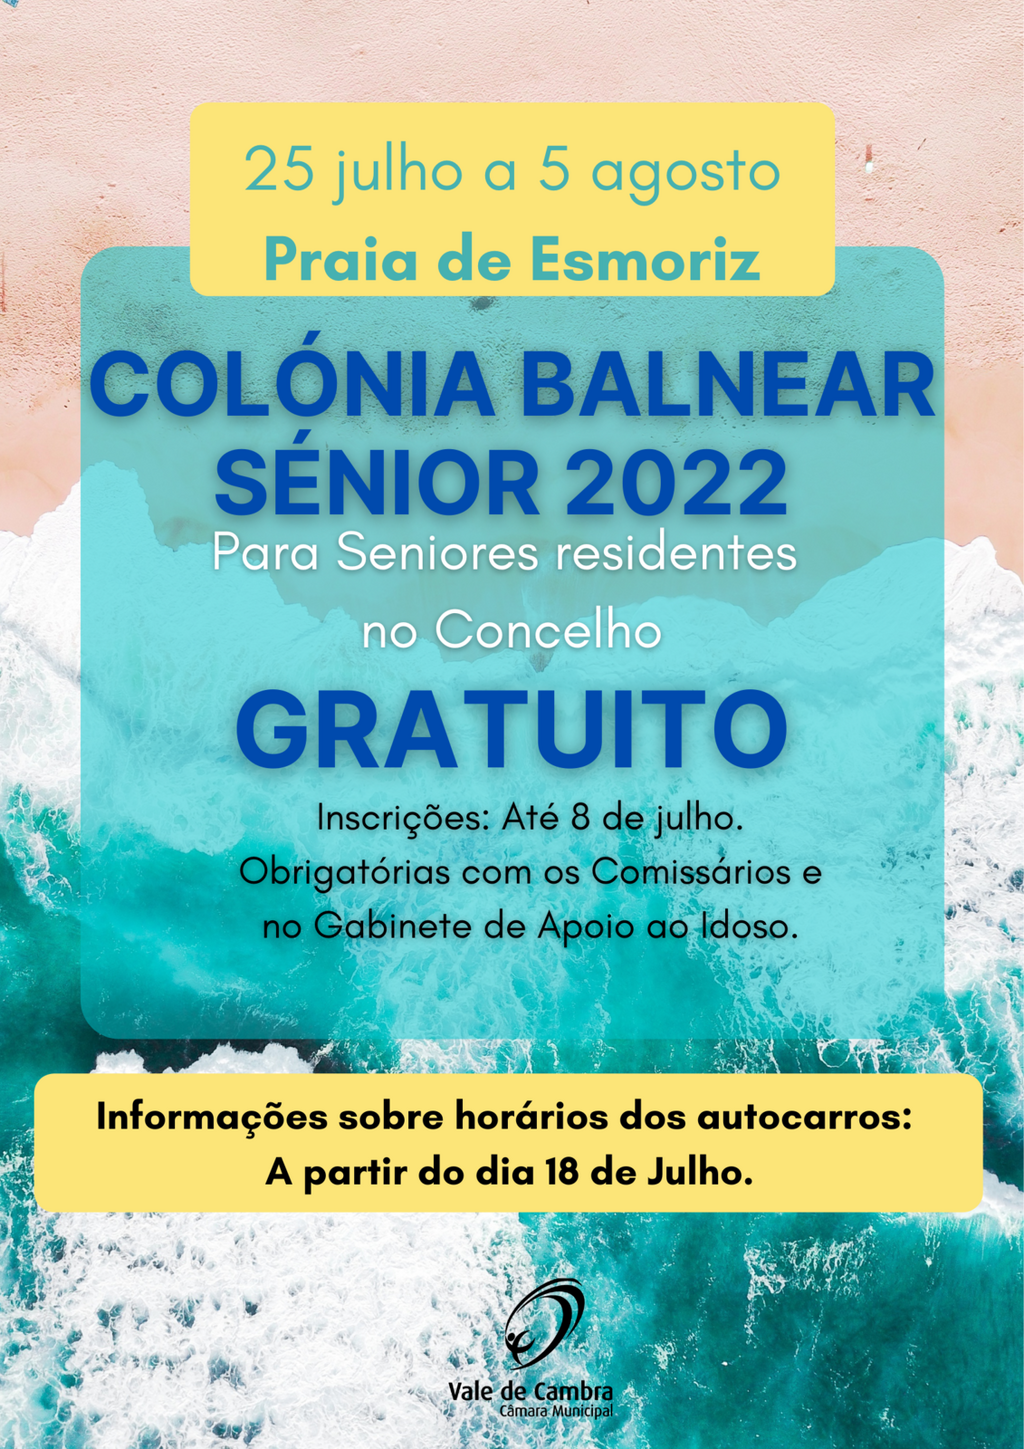 Época Balnear Sénior abre a 25 de julho em Esmoriz